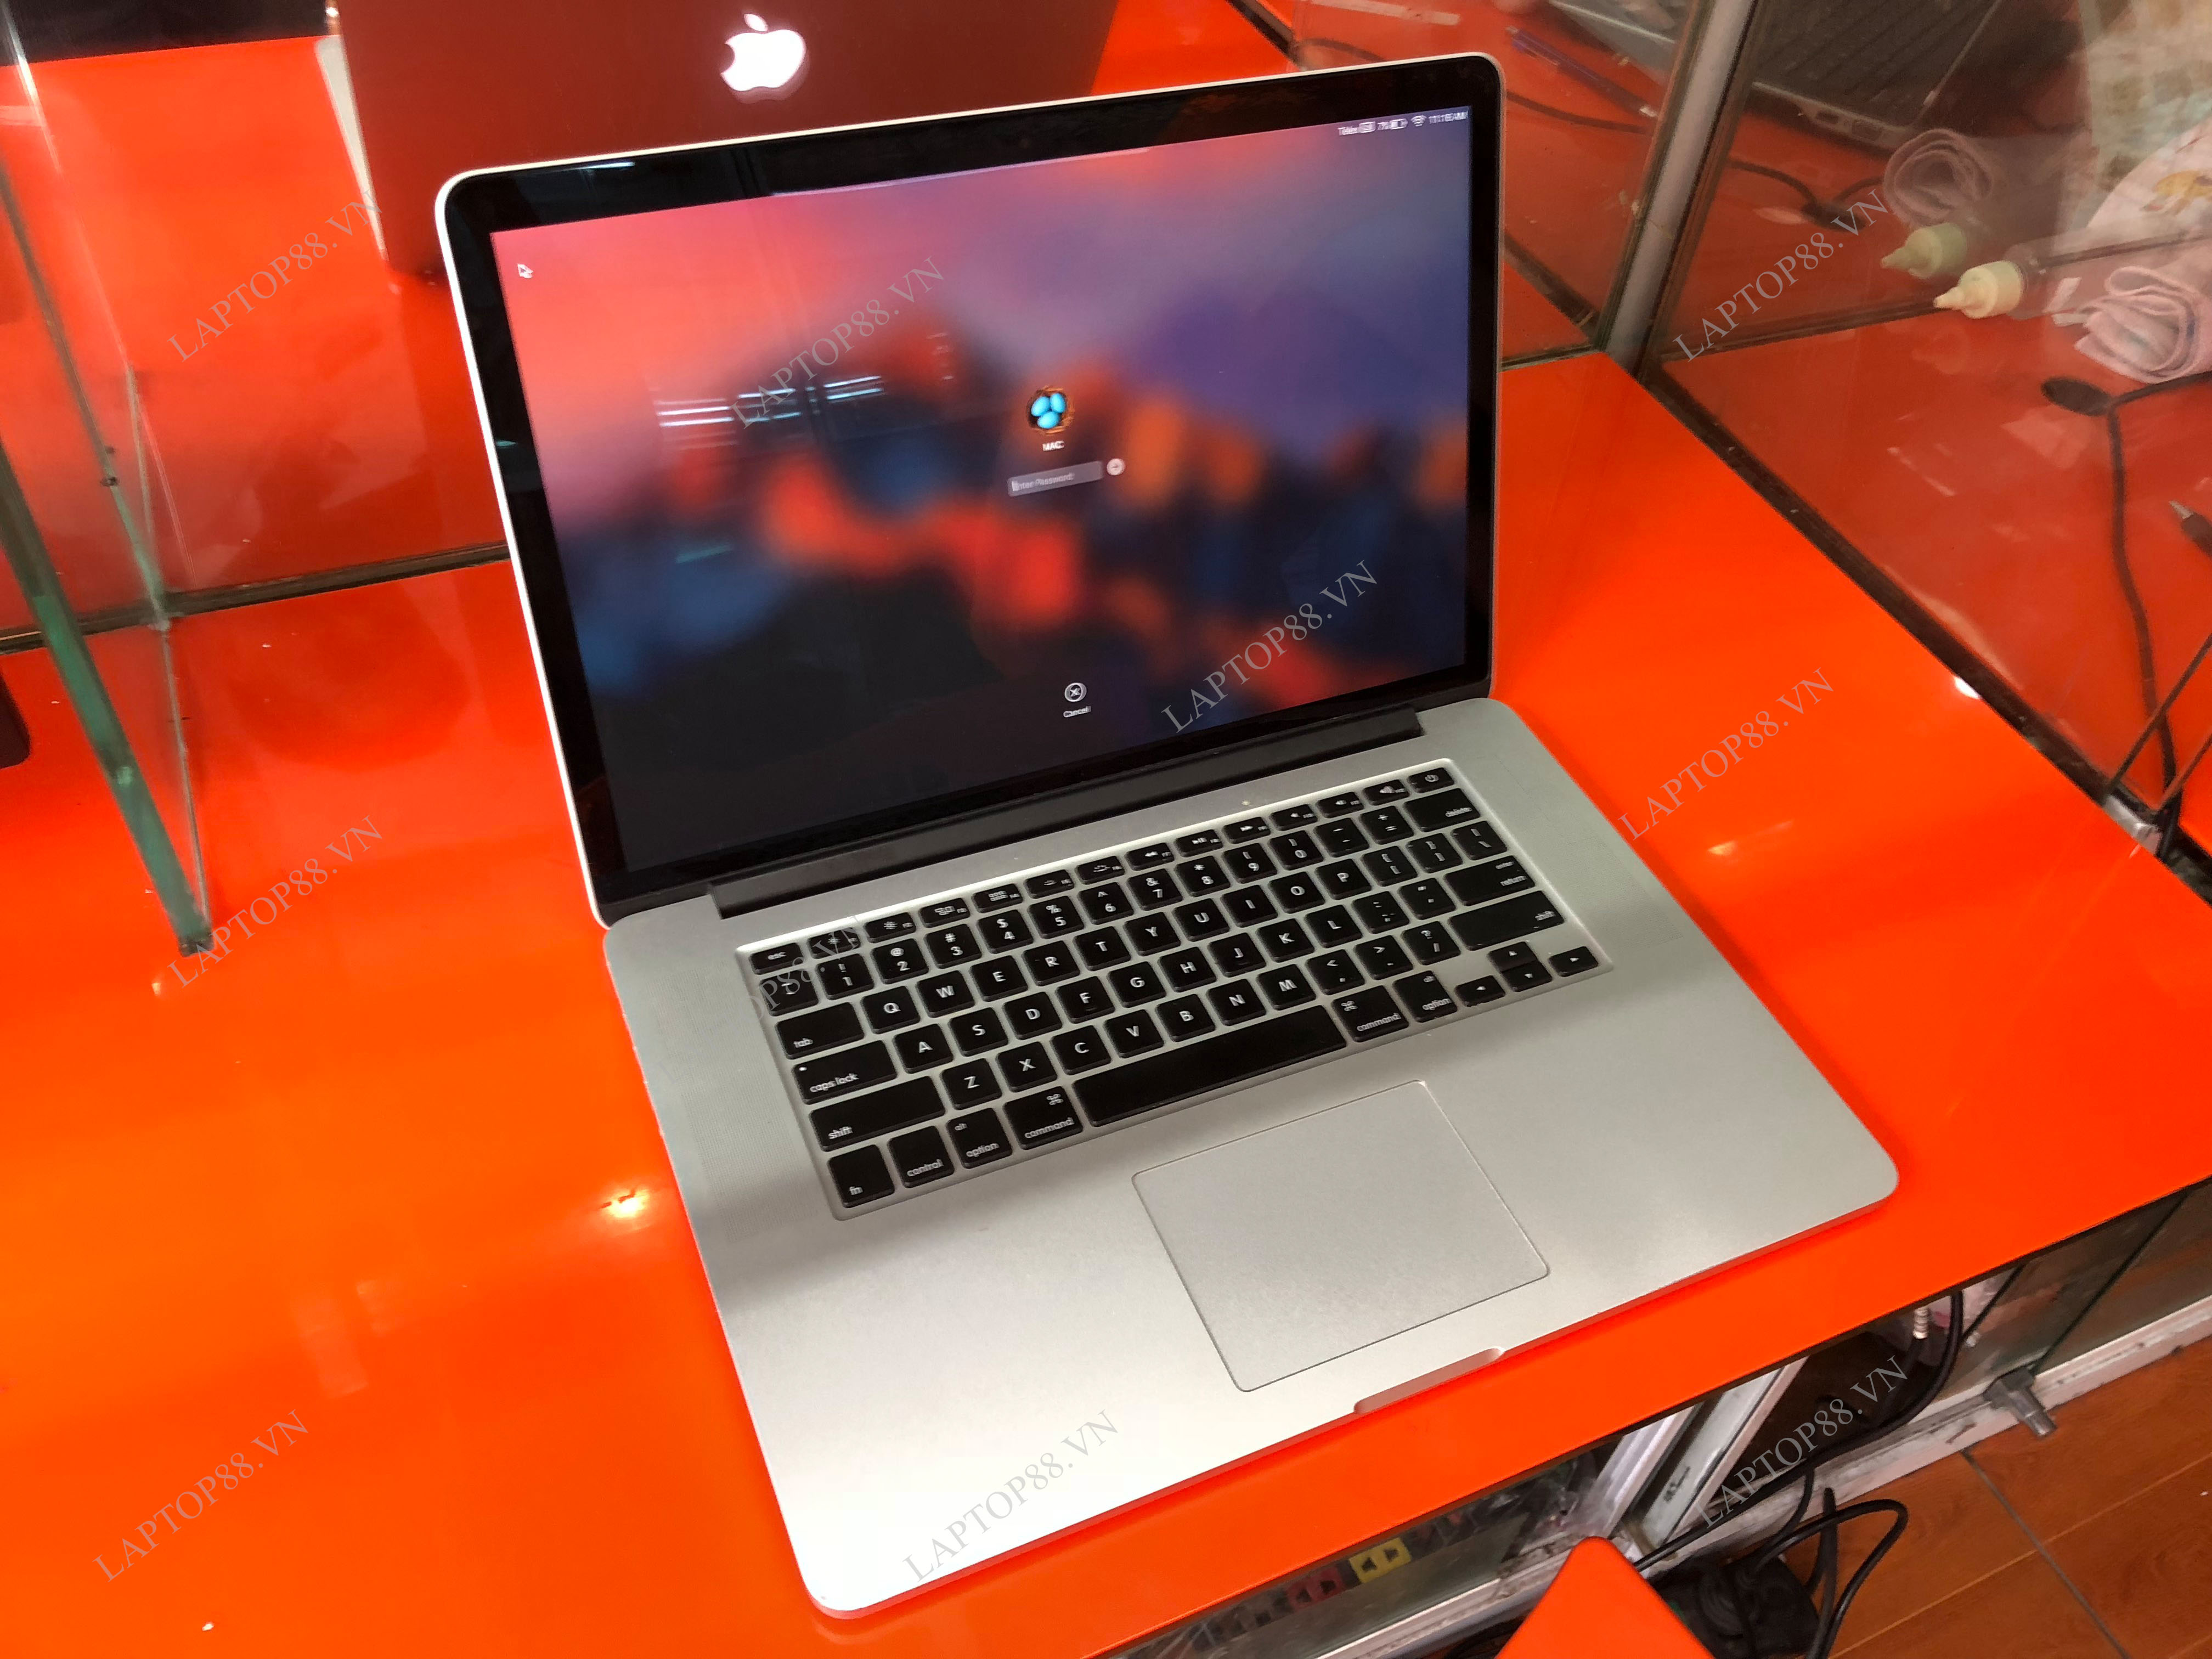 Macbook Pro 15 2015 MJLT2 (Core i7 2.8GHz, 16GB, SSD 1T, Iris Pro + AMD